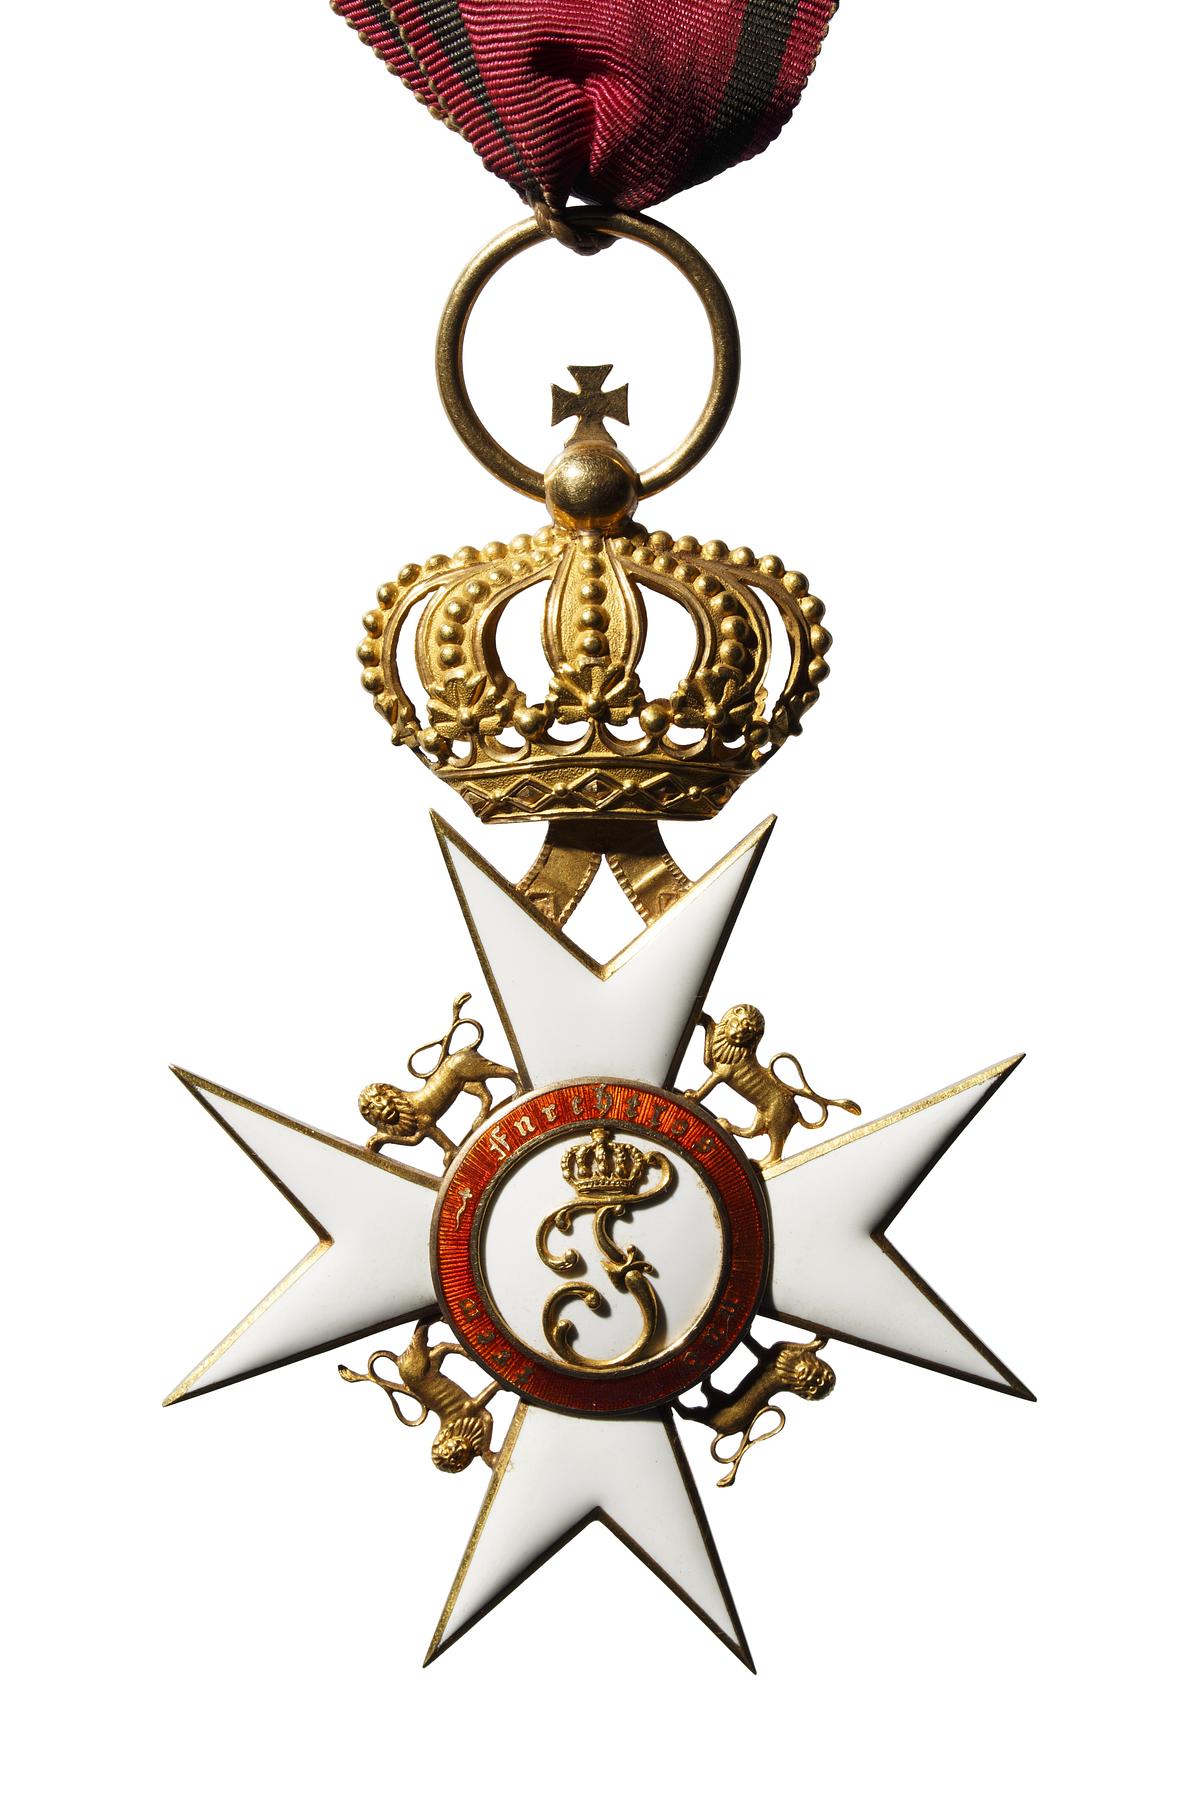 Kroneordenen (Württemberg), N14